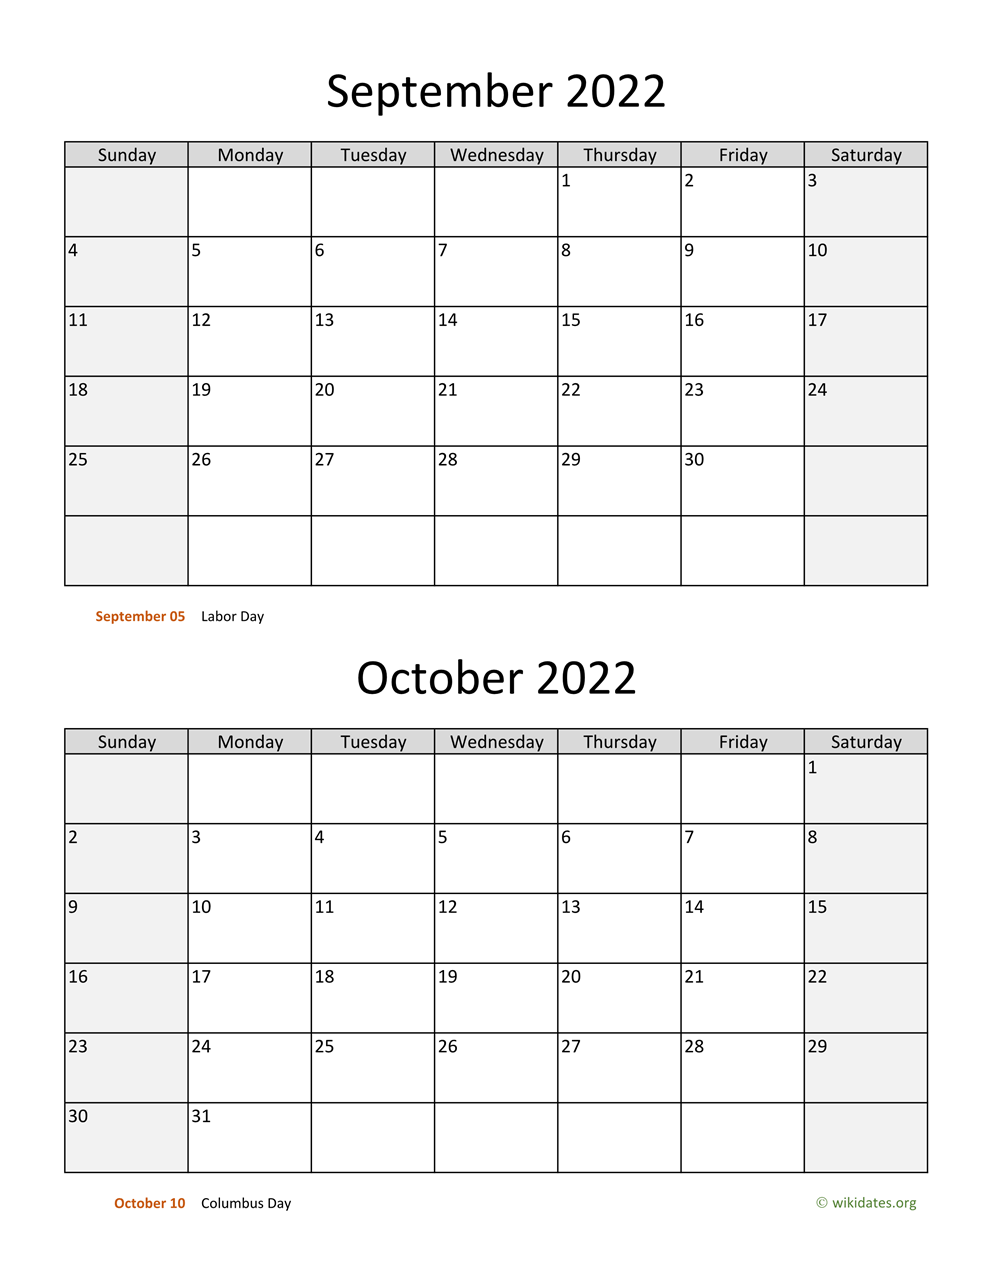 September And October 2022 Calendar September And October 2022 Calendar | Wikidates.org